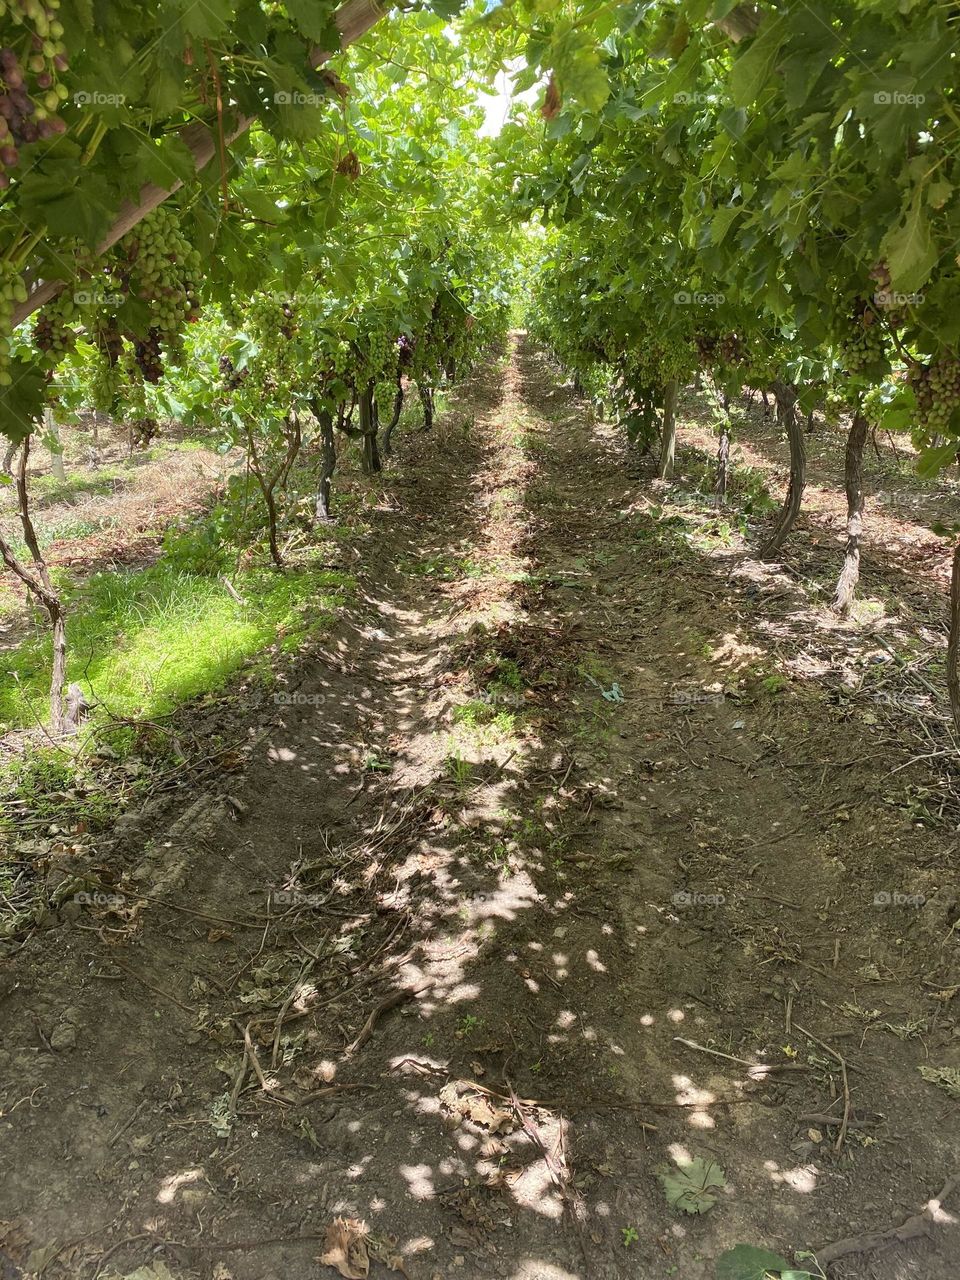 Pathway through vineyard